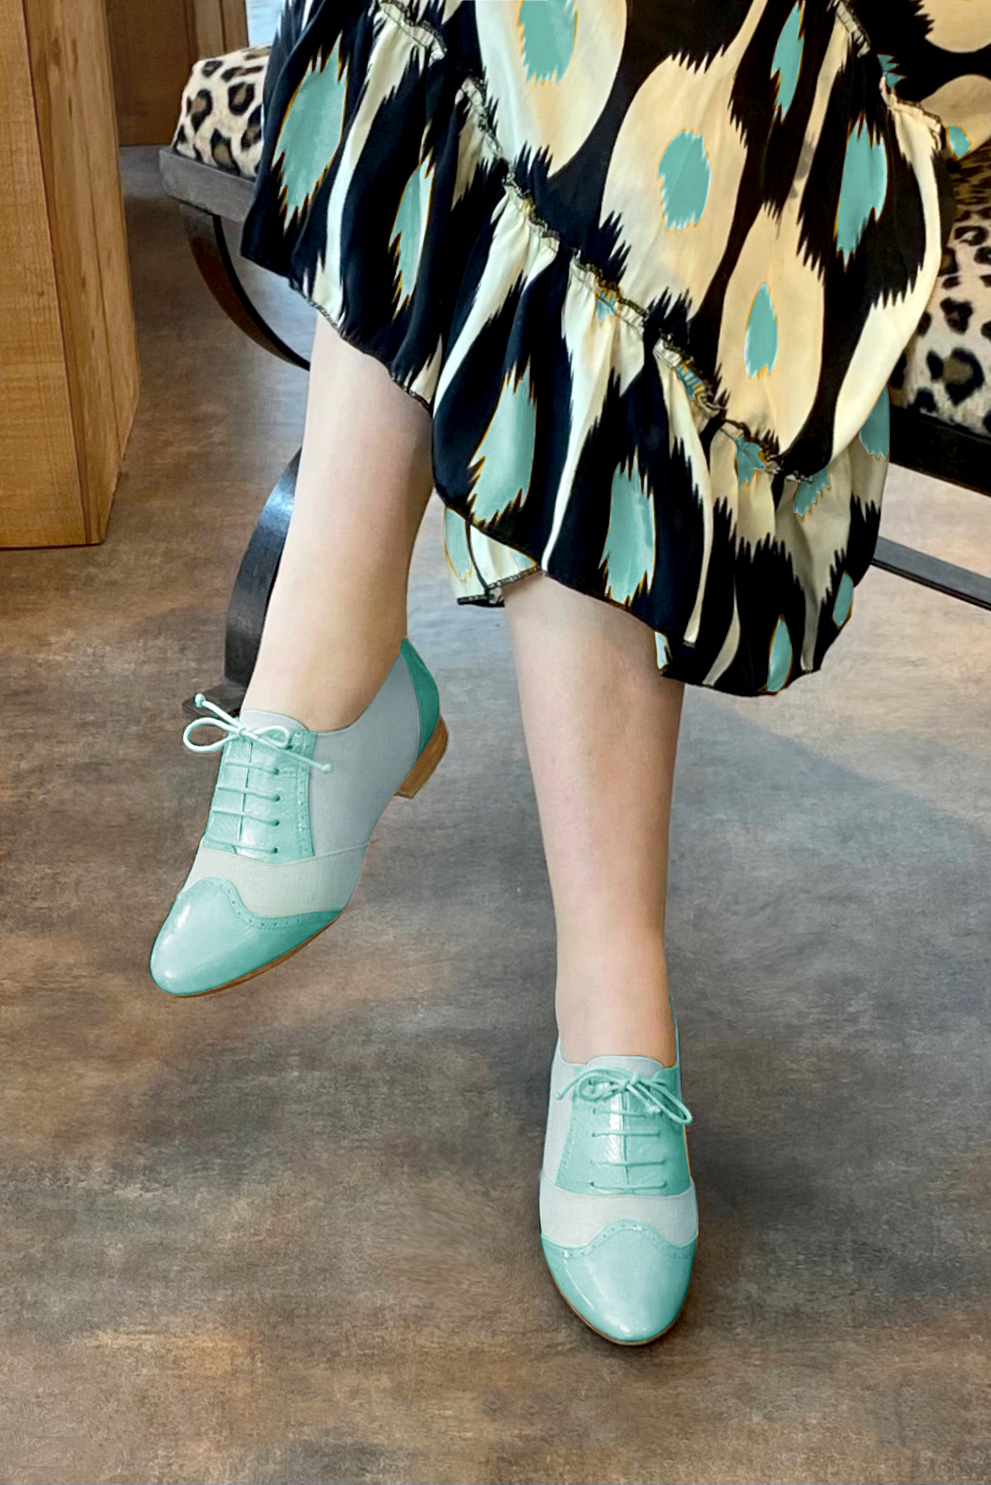 Chaussure femme à lacets : Derby original couleur bleu lagon.. Vue porté - Florence KOOIJMAN